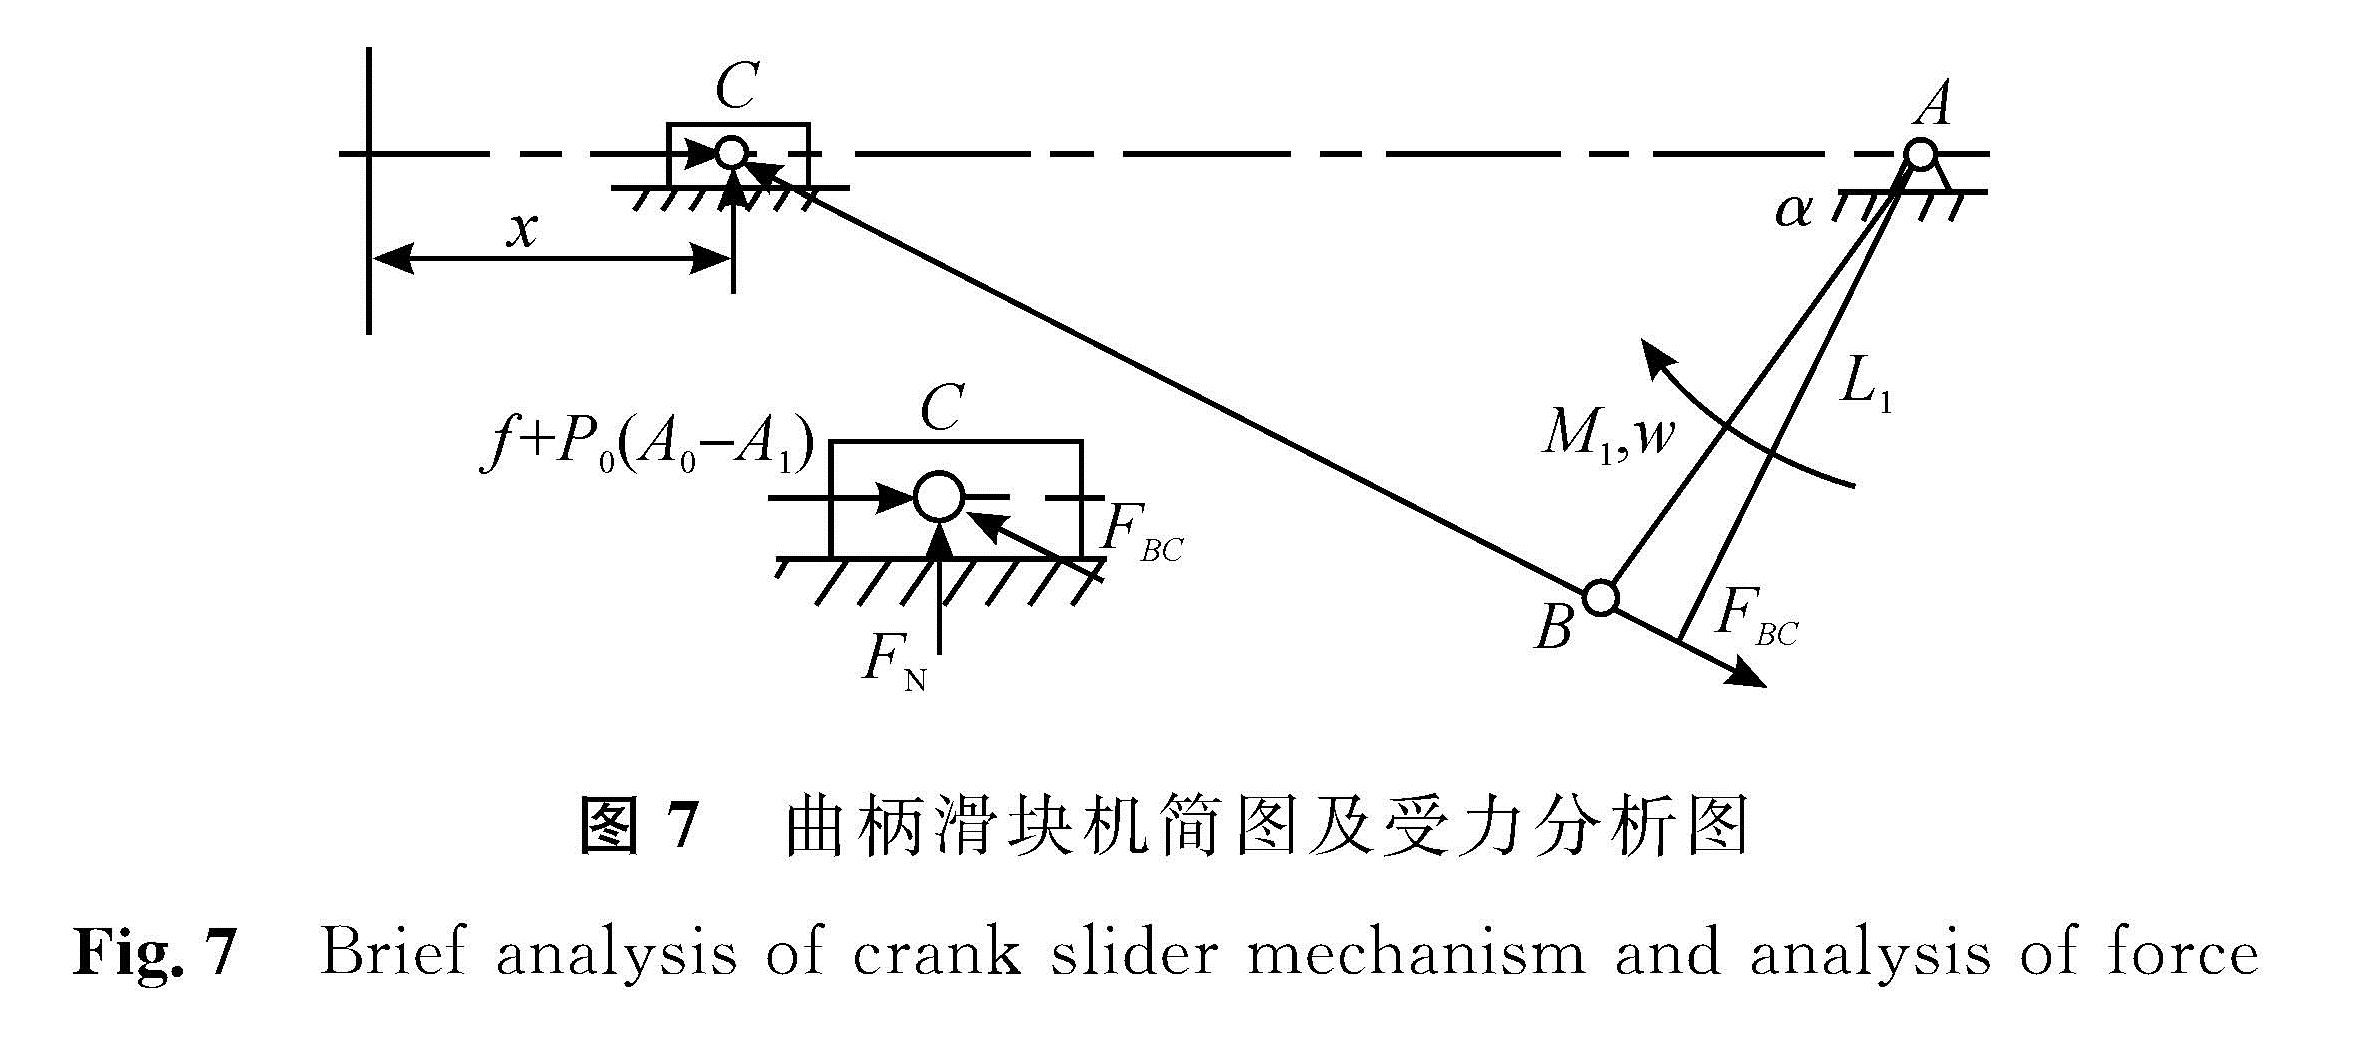 图7 曲柄滑块机简图及受力分析图<br/>Fig.7 Brief analysis of crank slider mechanism and analysis of force